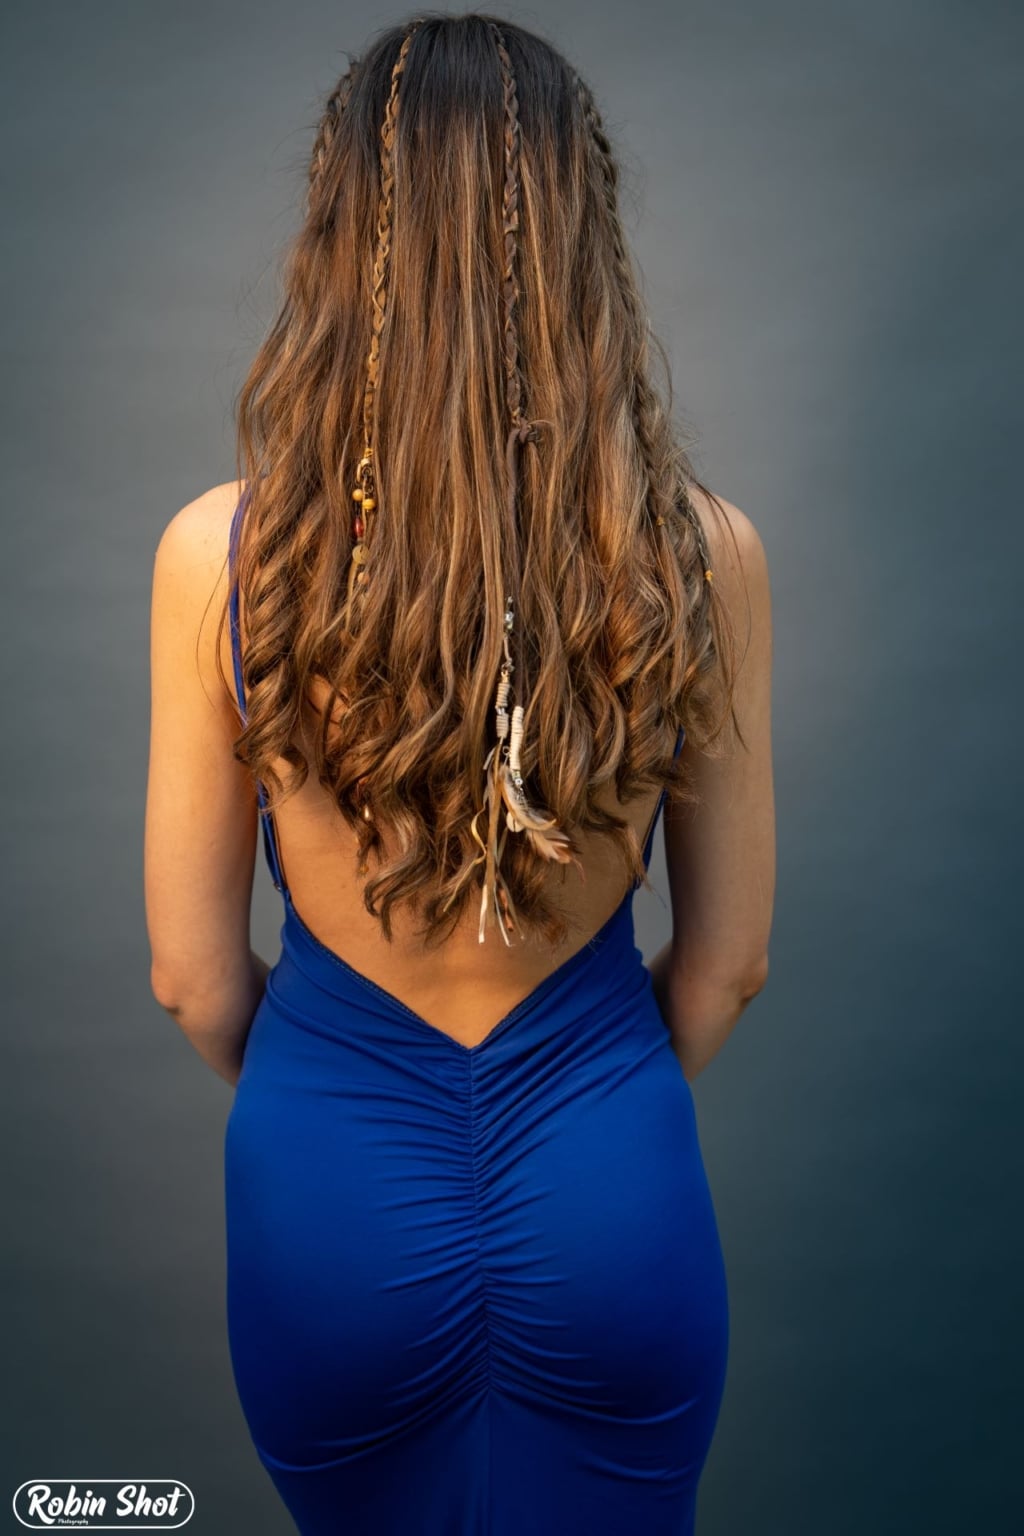 Frau mit langen braunen Haaren trägt die Hairdreams Leather Ribbons in ihrer Frisur